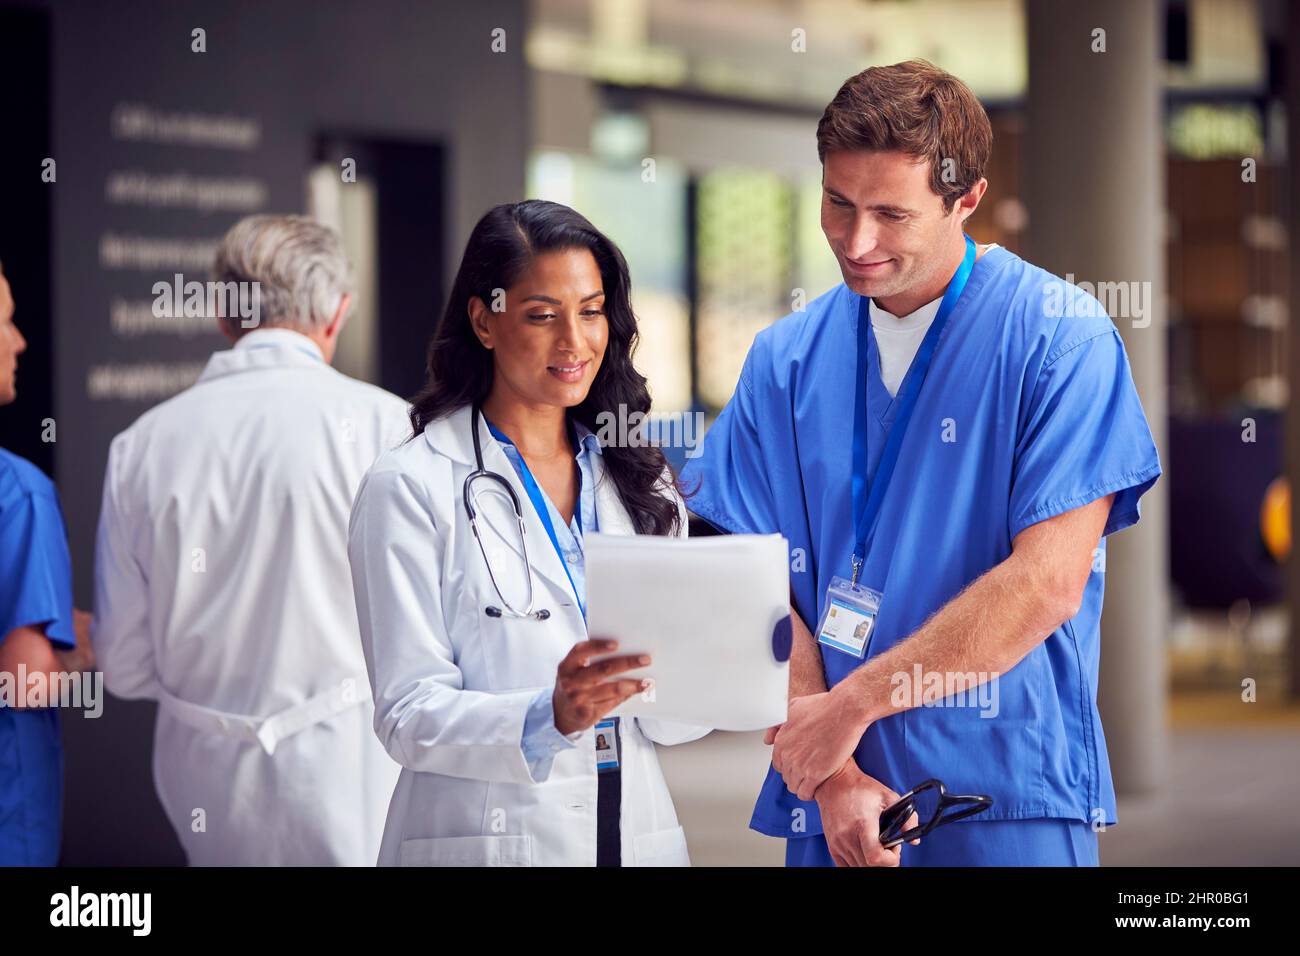 Dos miembros del personal médico de White Coats y Scrubs con Digital Tablet que tienen una reunión informal en el hospital Foto de stock